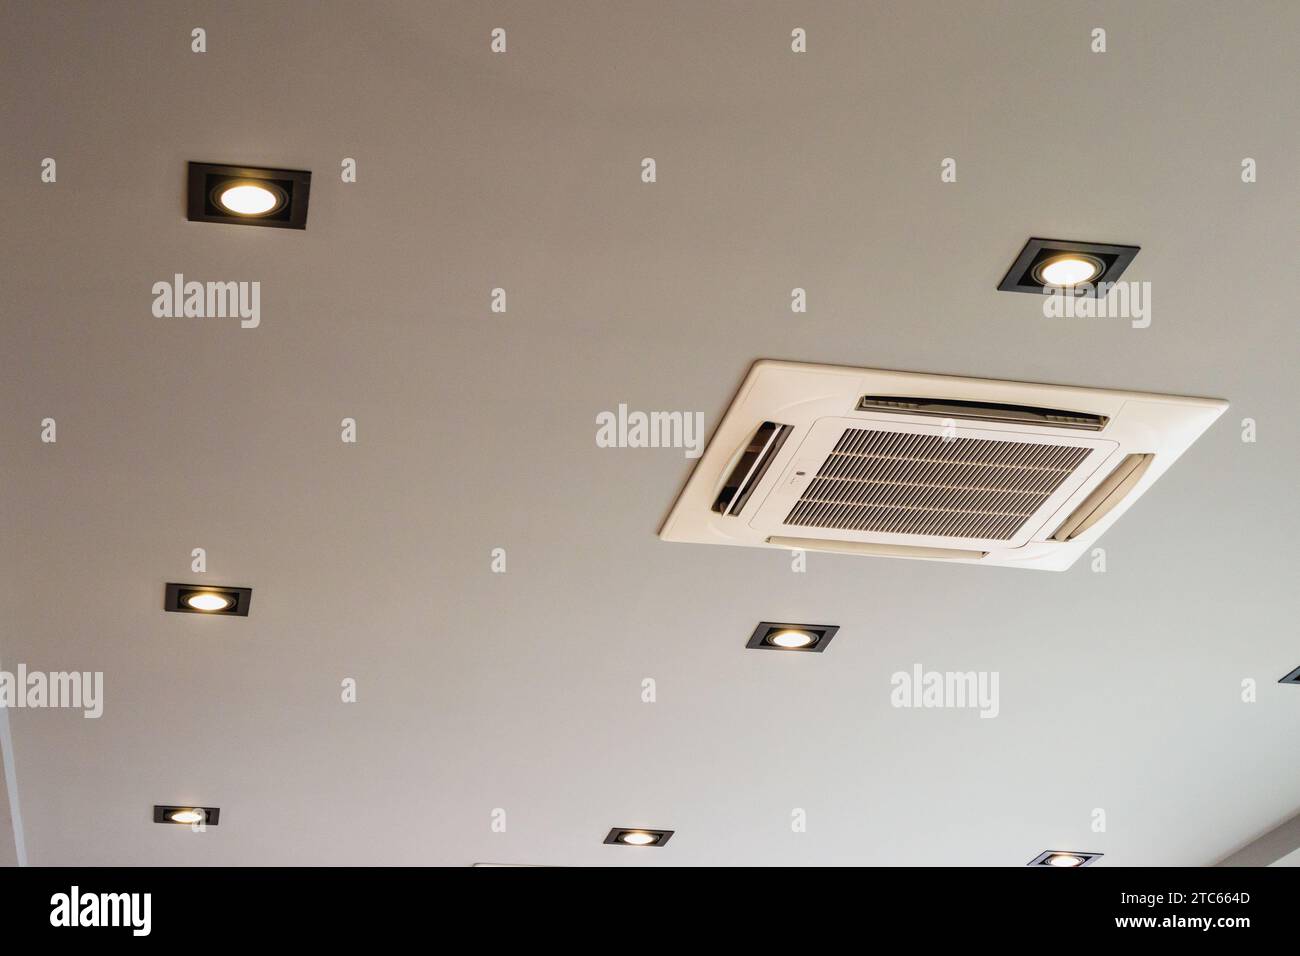 Moderno impianto di climatizzazione a cassetta montato a soffitto Foto Stock